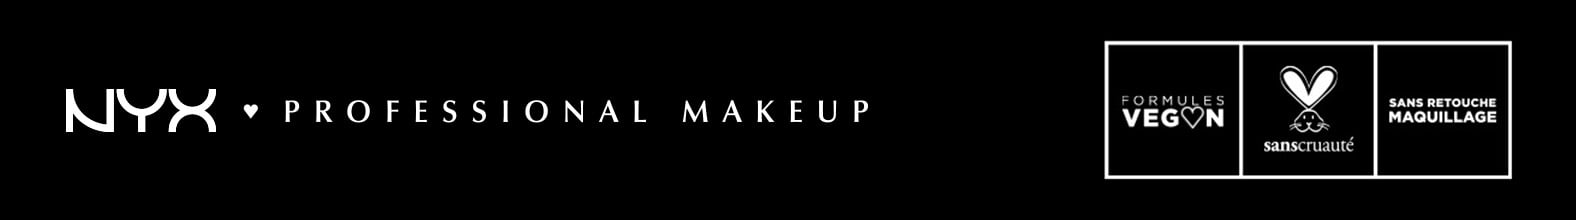 NYX Professional Makeup - Formules Vegan, sanscruauté, Sans Retouche Maquillage